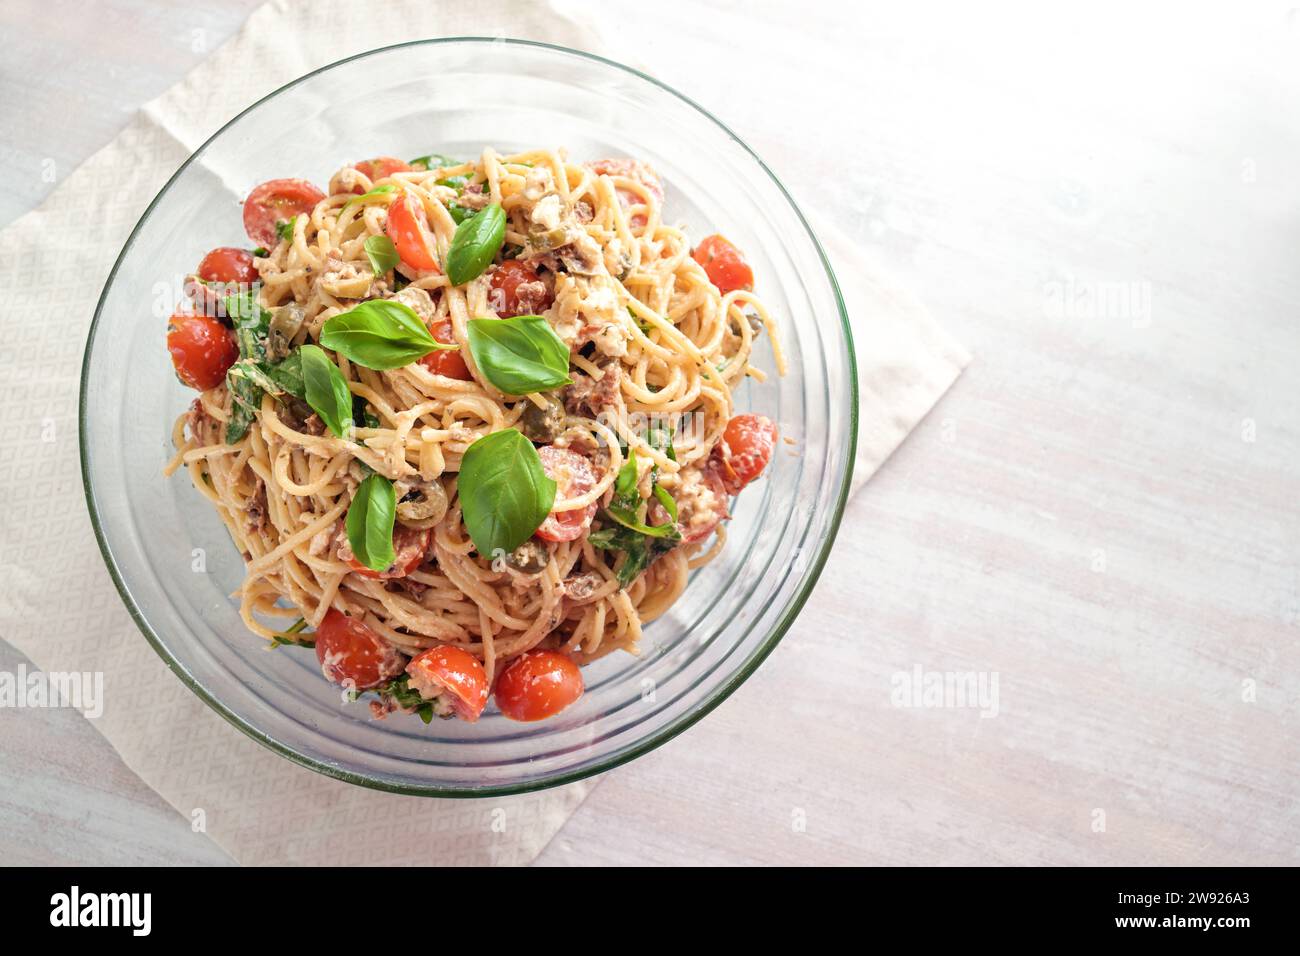 Kalter Spaghetti-Salat mit Tomaten, Rucola, Mozzarella, Oliven und einem cremigen Dressing mit Basilikumgarnitur in einer Glasschale auf einem weiß bemalten Tisch, oben Stockfoto